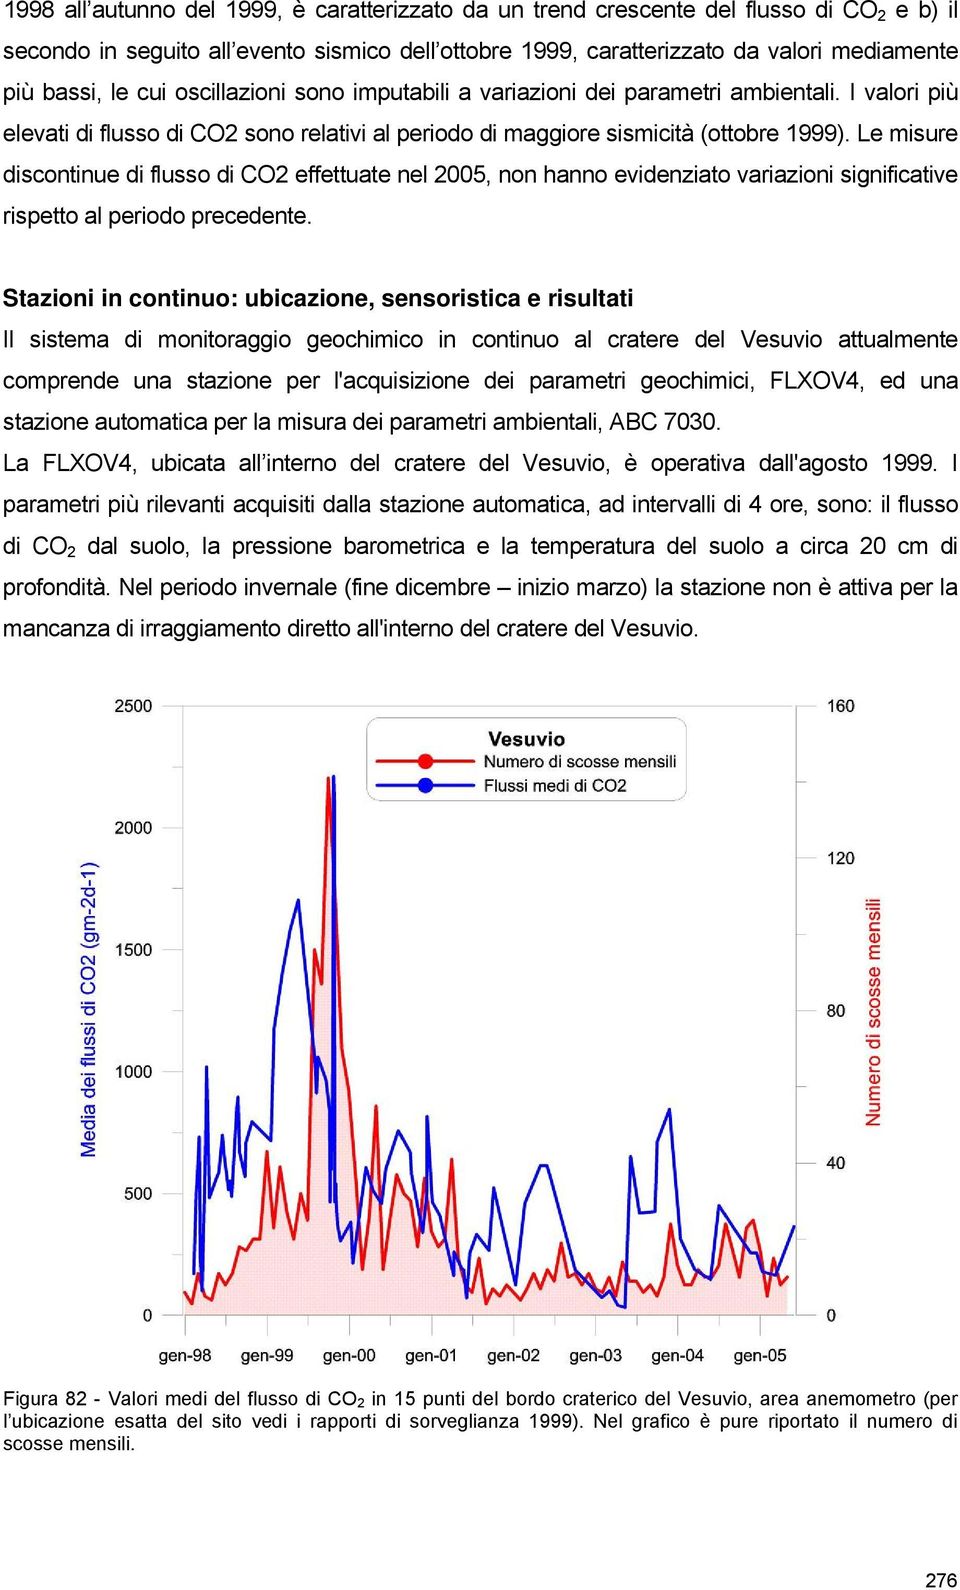 Le misure discontinue di flusso di CO2 effettuate nel 2005, non hanno evidenziato variazioni significative rispetto al periodo precedente.